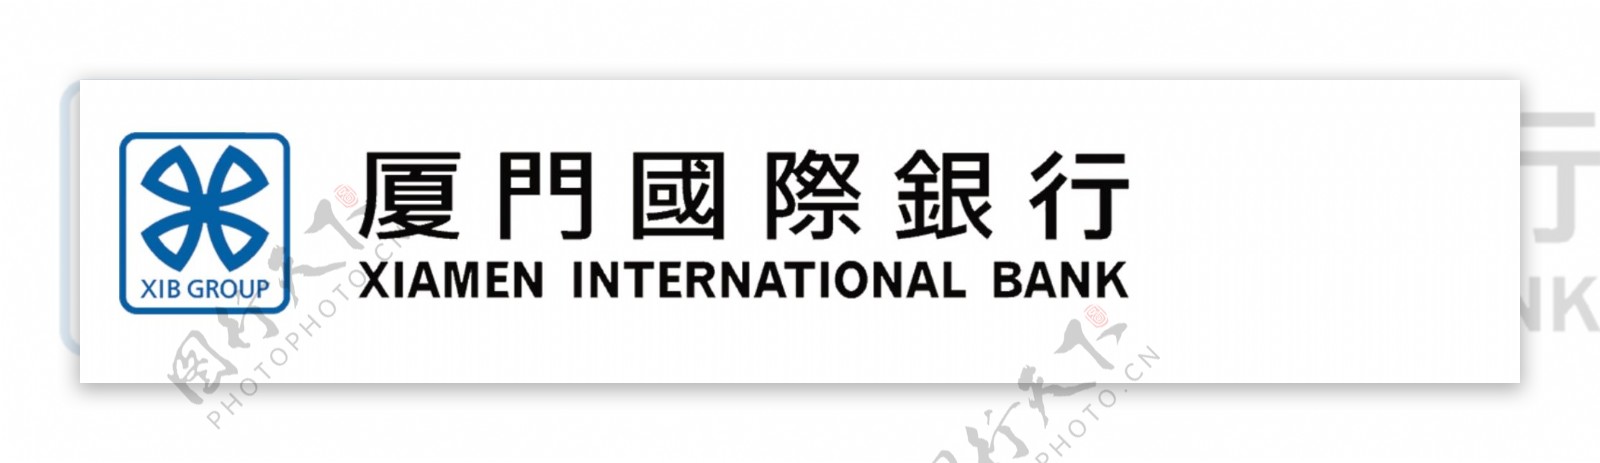 厦门国际银行LOGO